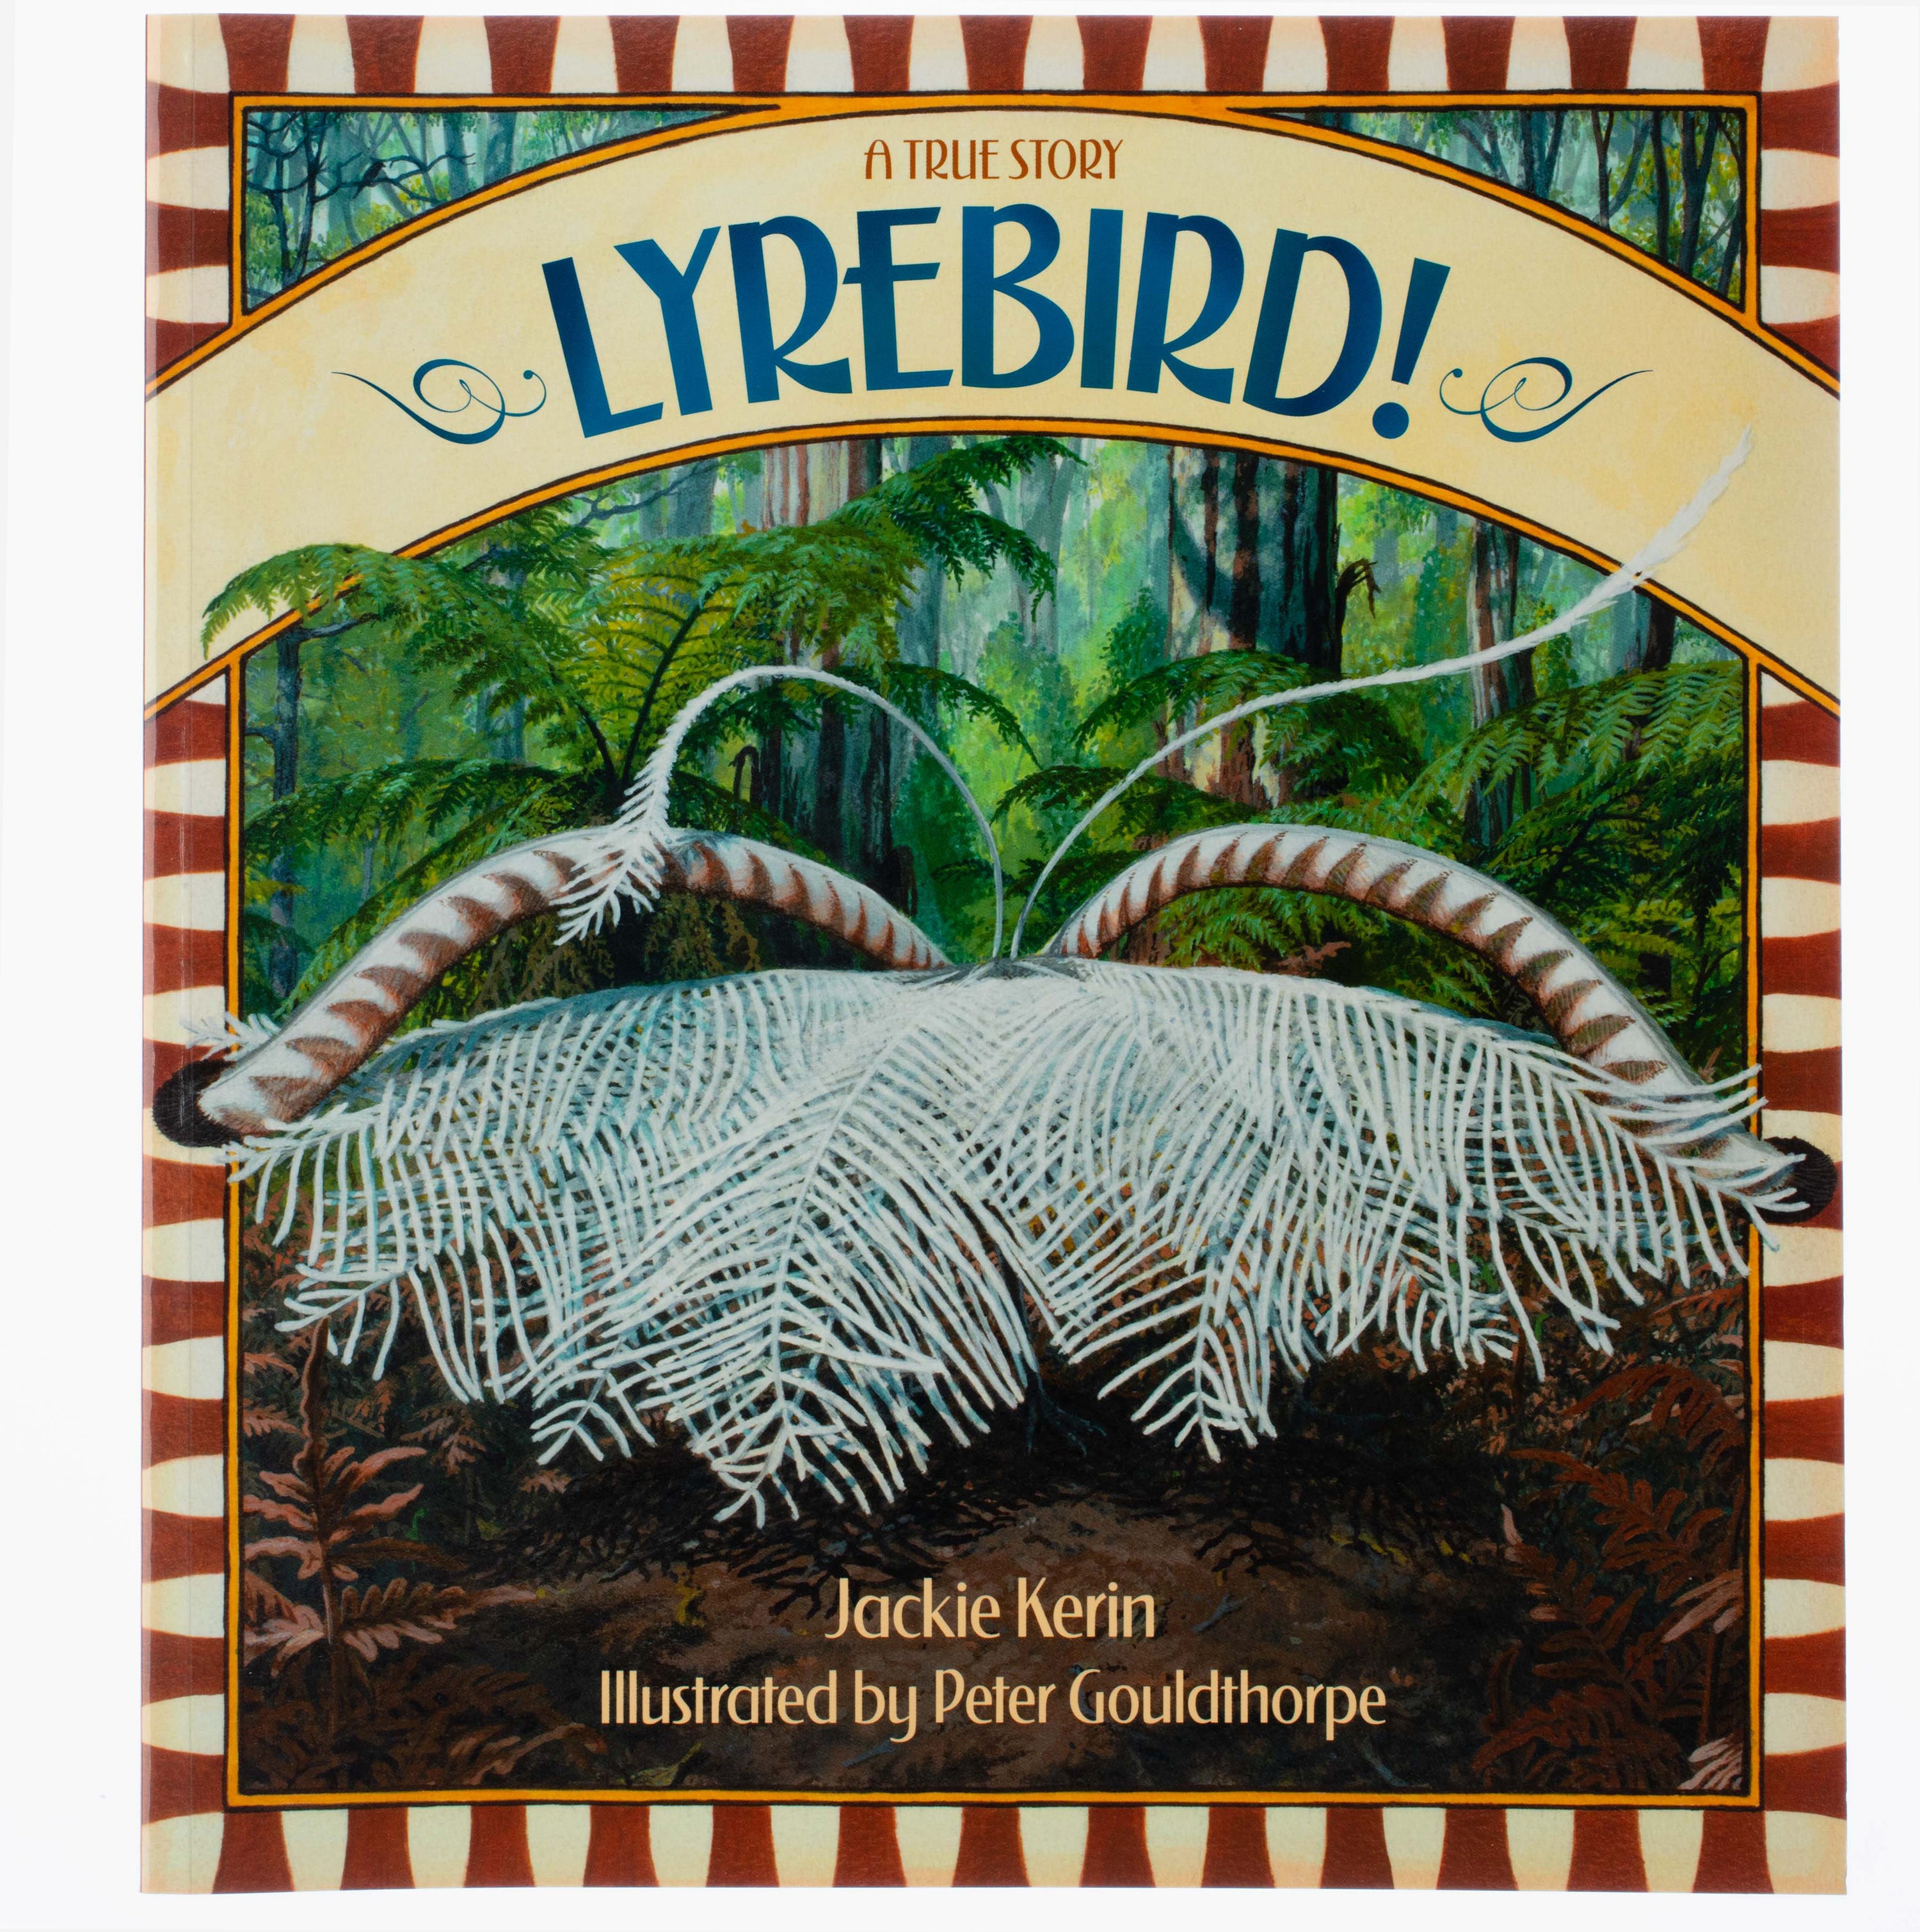 Lyrebird: A True Story